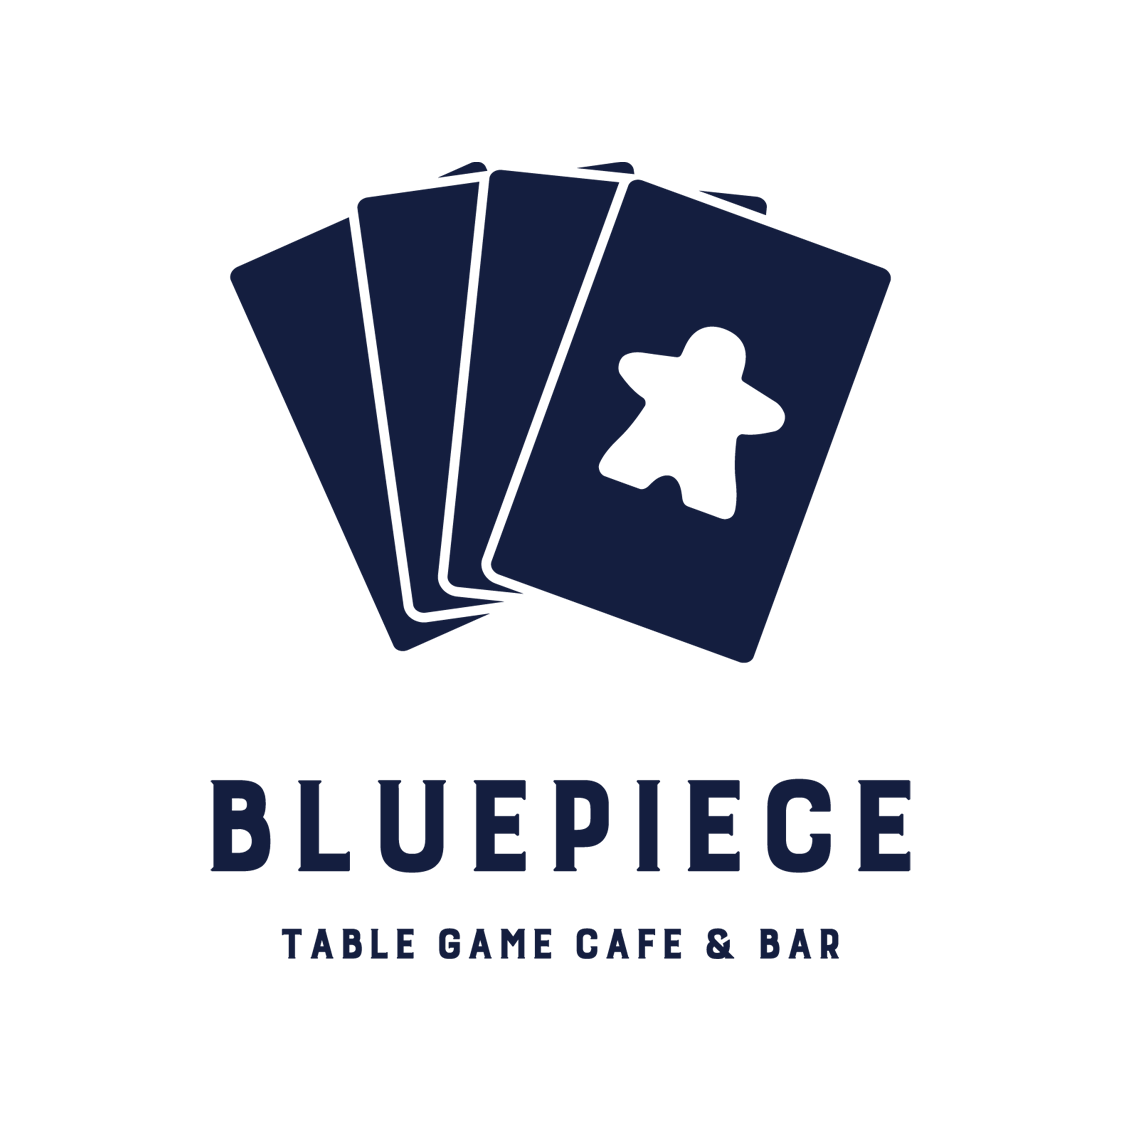 GameCafe&Bar BLUE PIECE